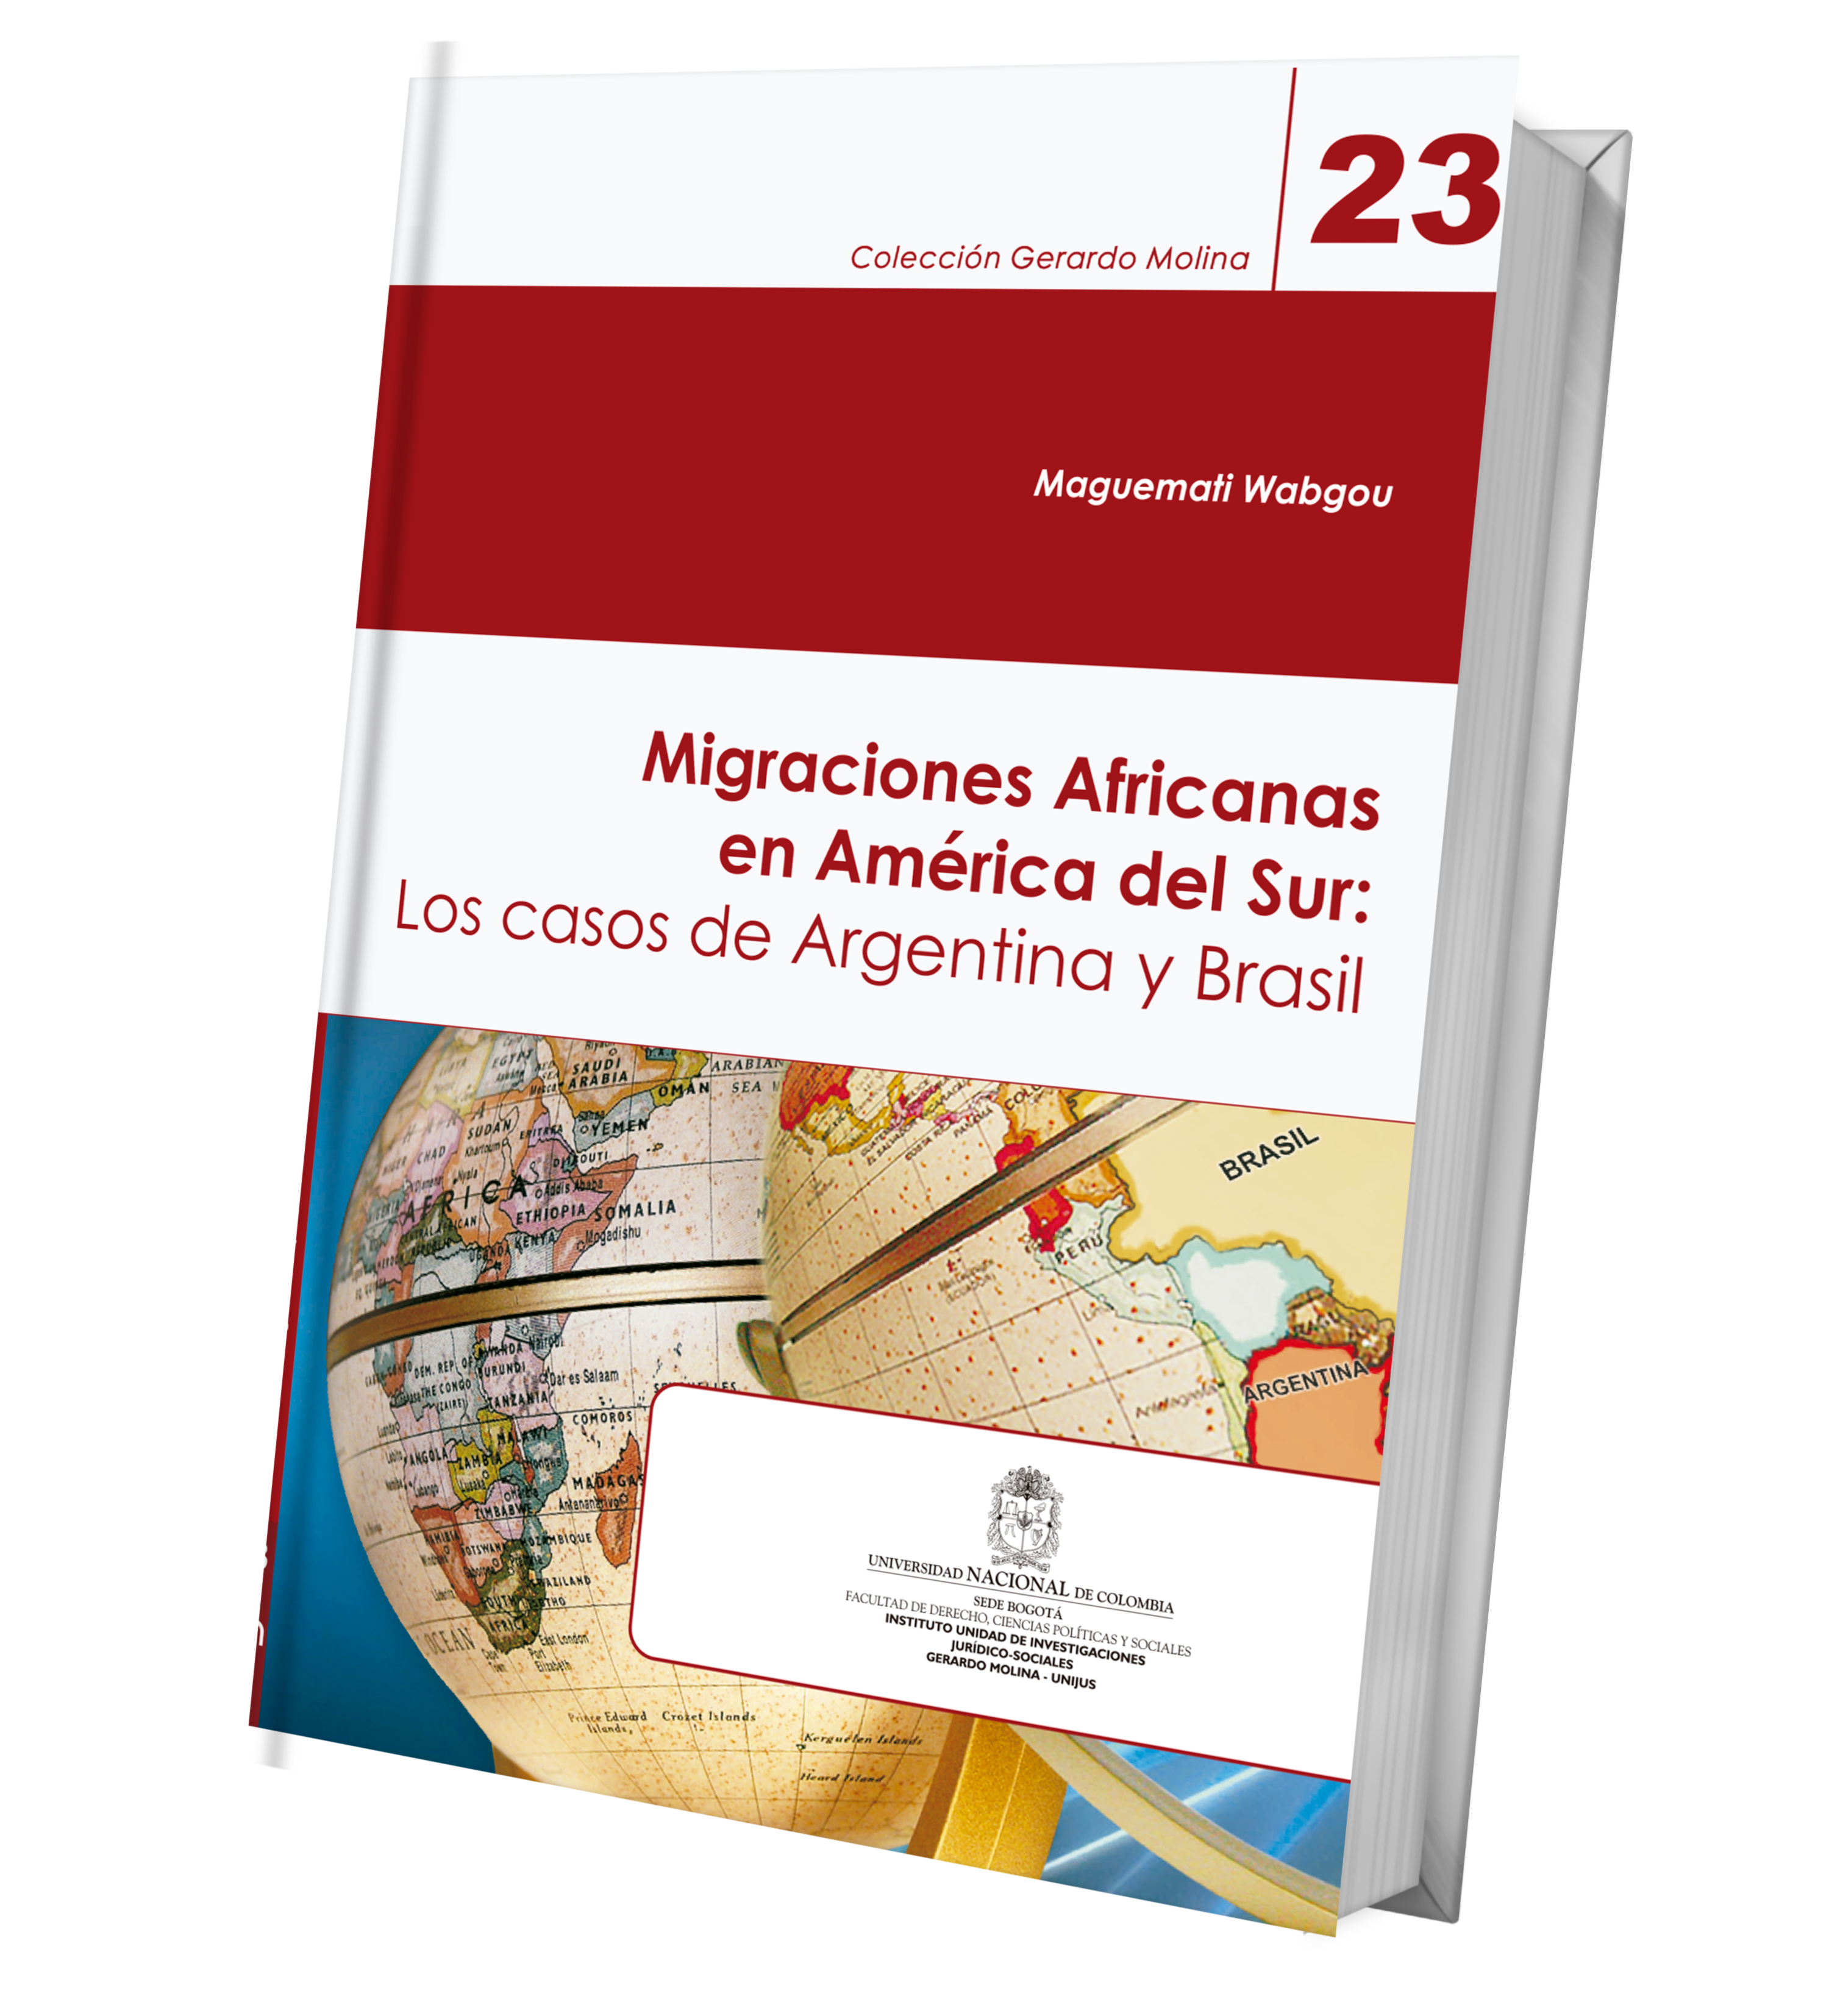 Migraciones Africanas en América del Sur: Los casos de Argentina y Brasil